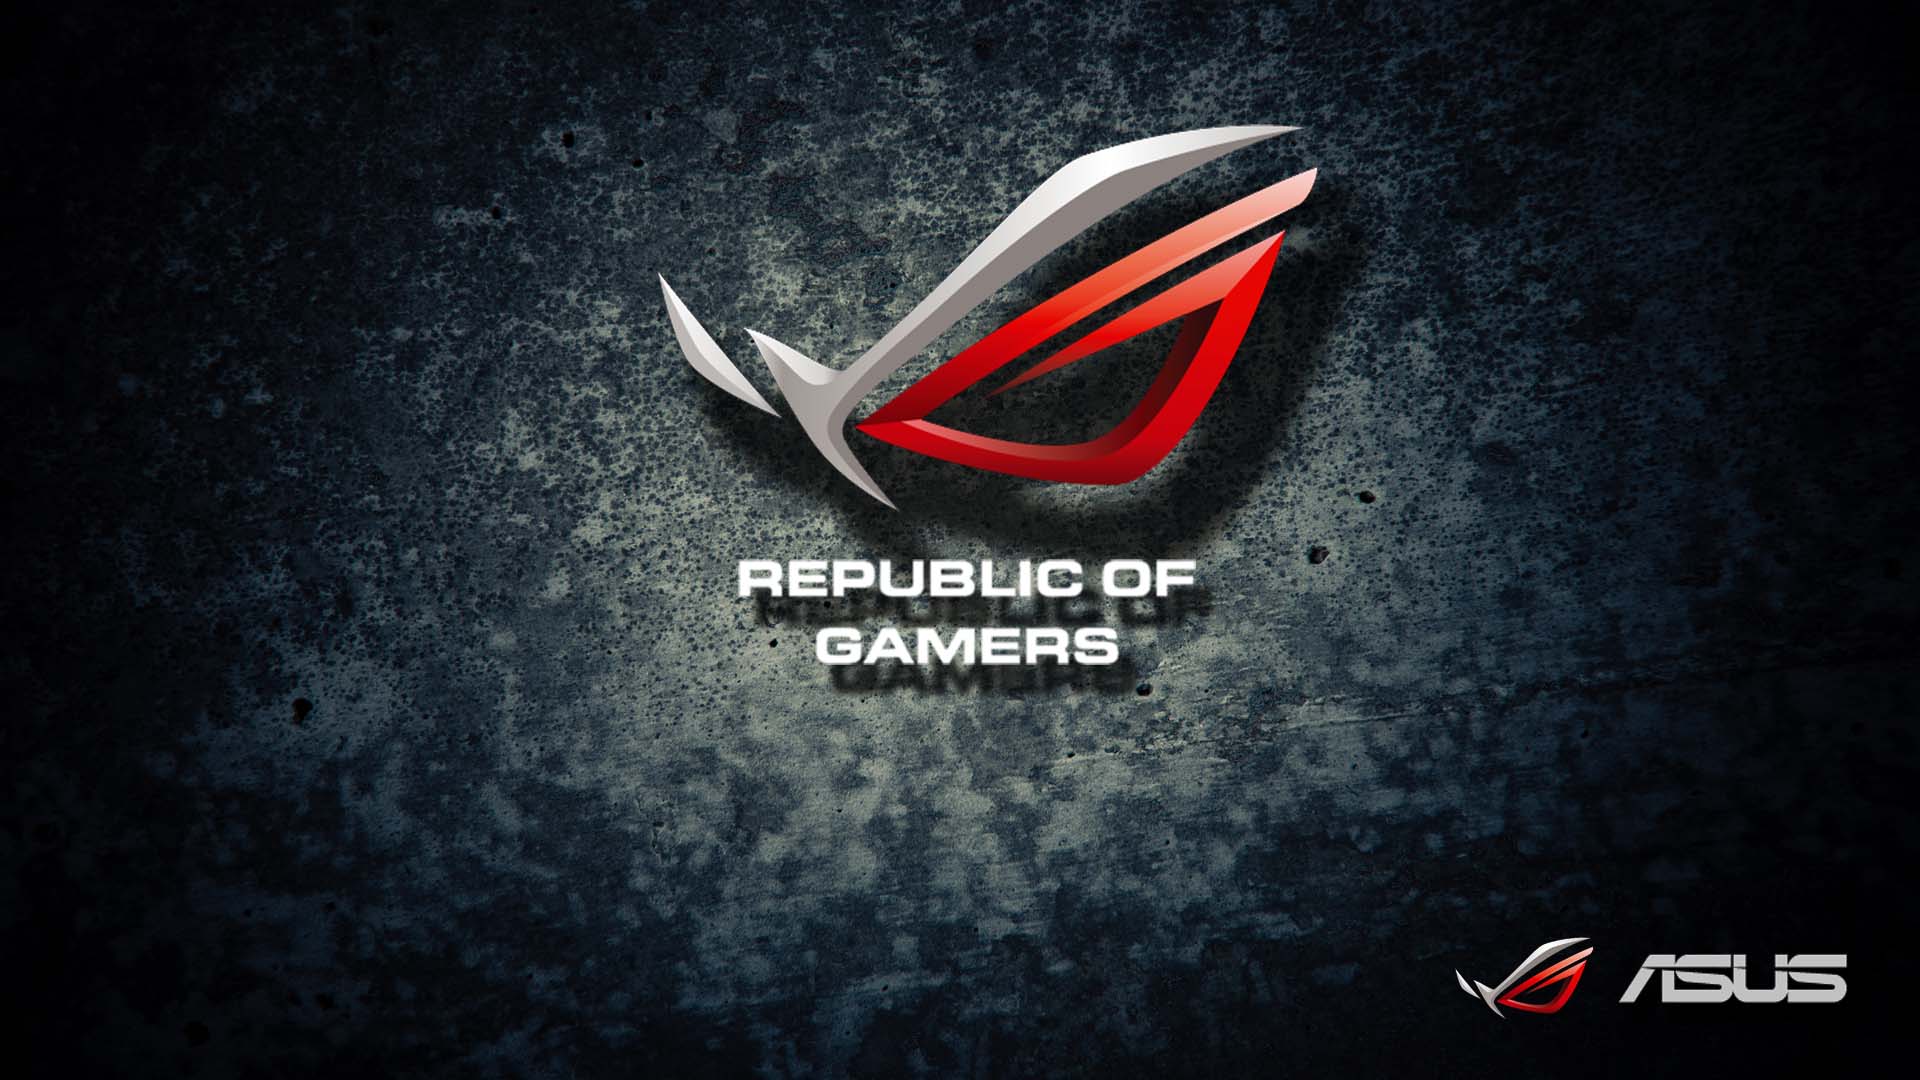 Asus Republic Of Gamers HD Wallpaper For Desktop